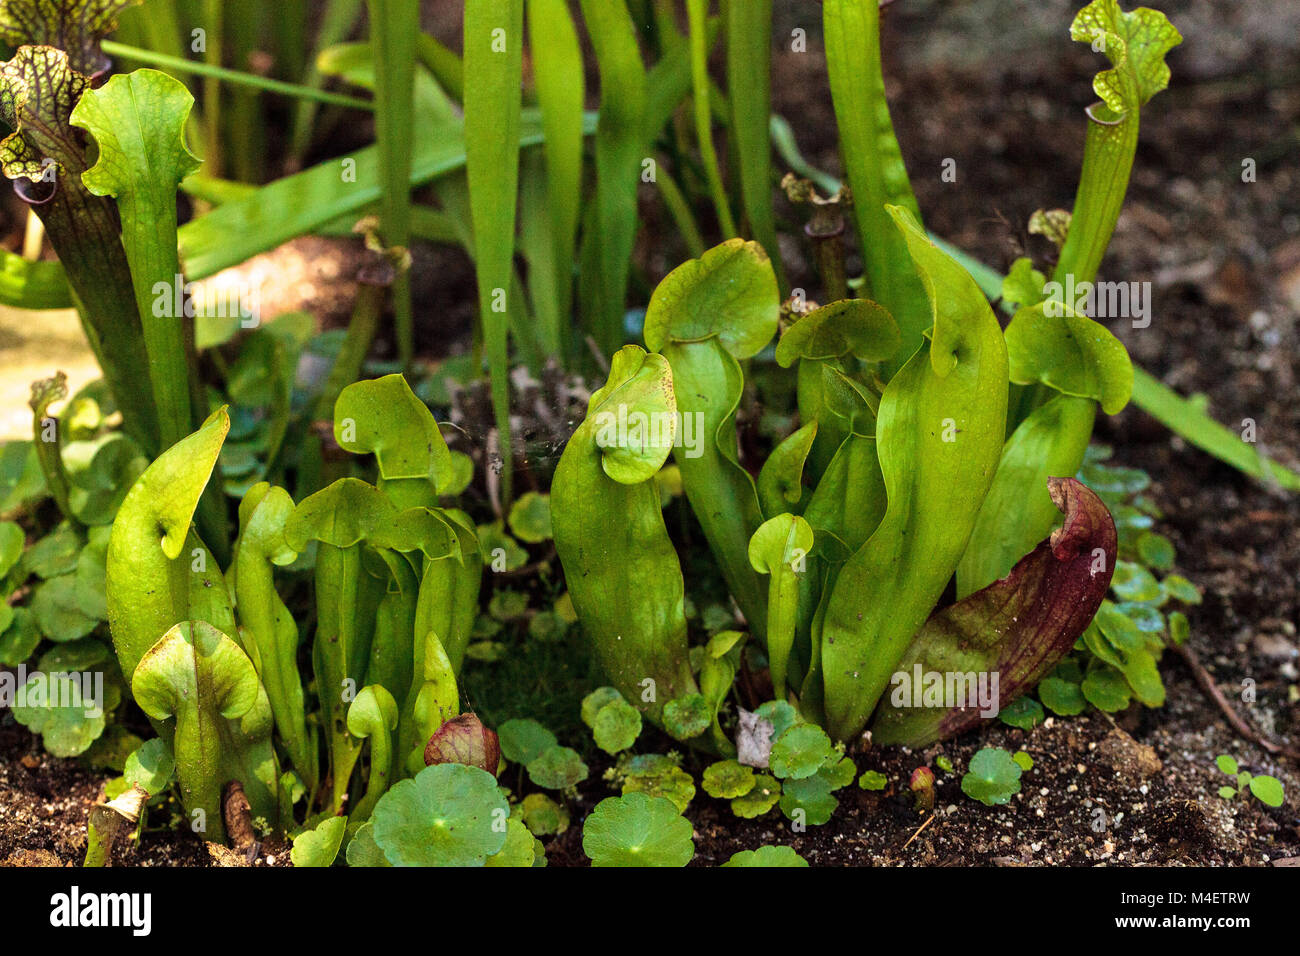 American pianta brocca, Sarracenia, è una pianta carnivora Foto Stock